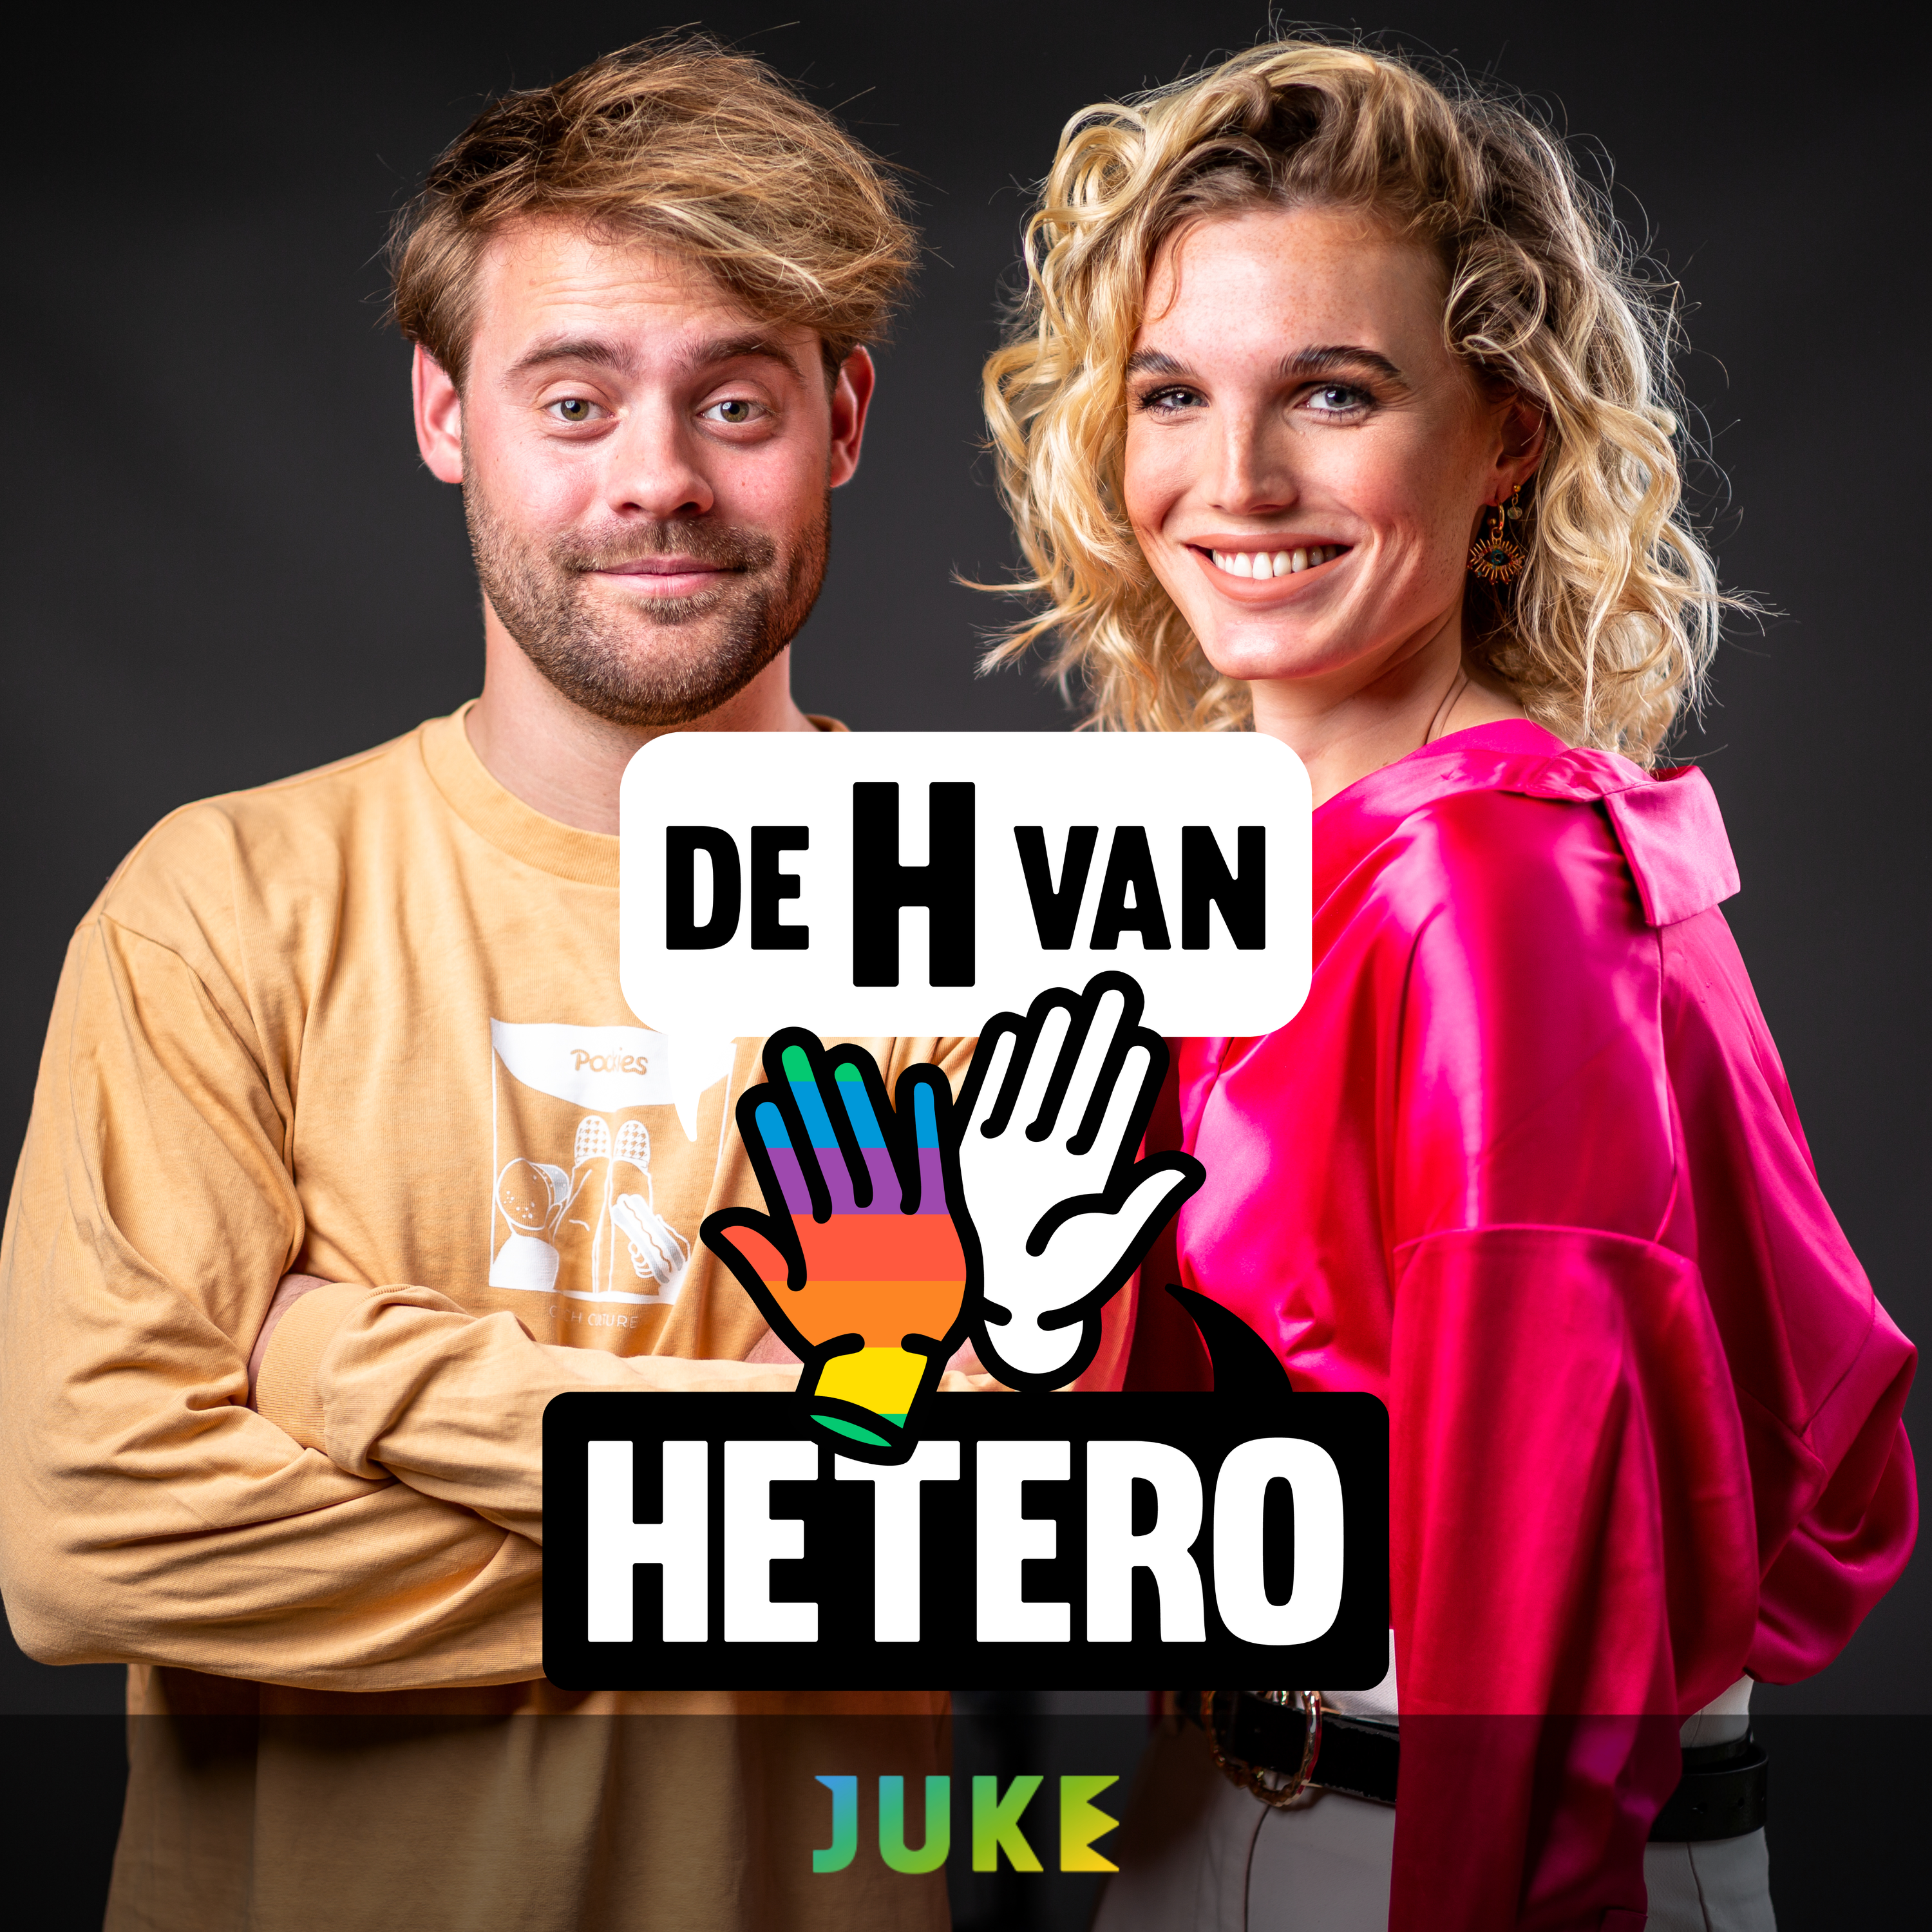 De H van Hetero - Trailer